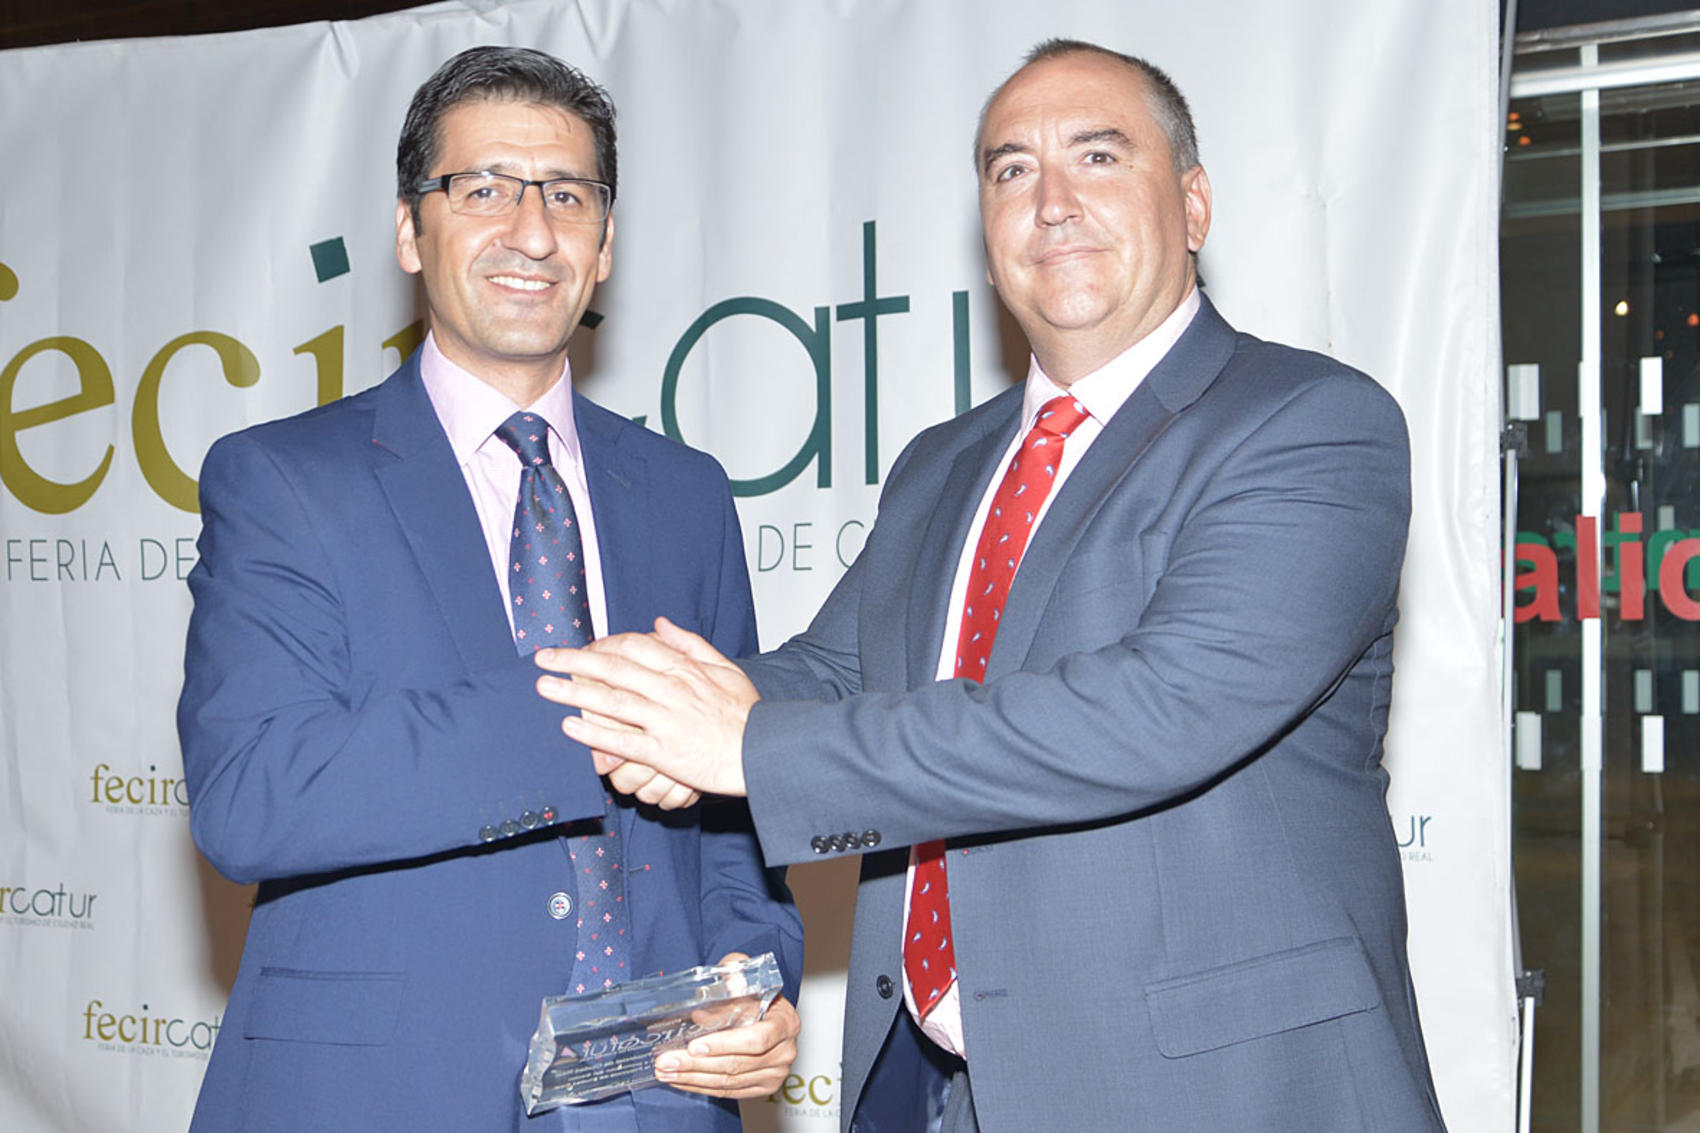 La organización de la Feria de la Caza concede a la Diputación el I Premio FECIRCATUR